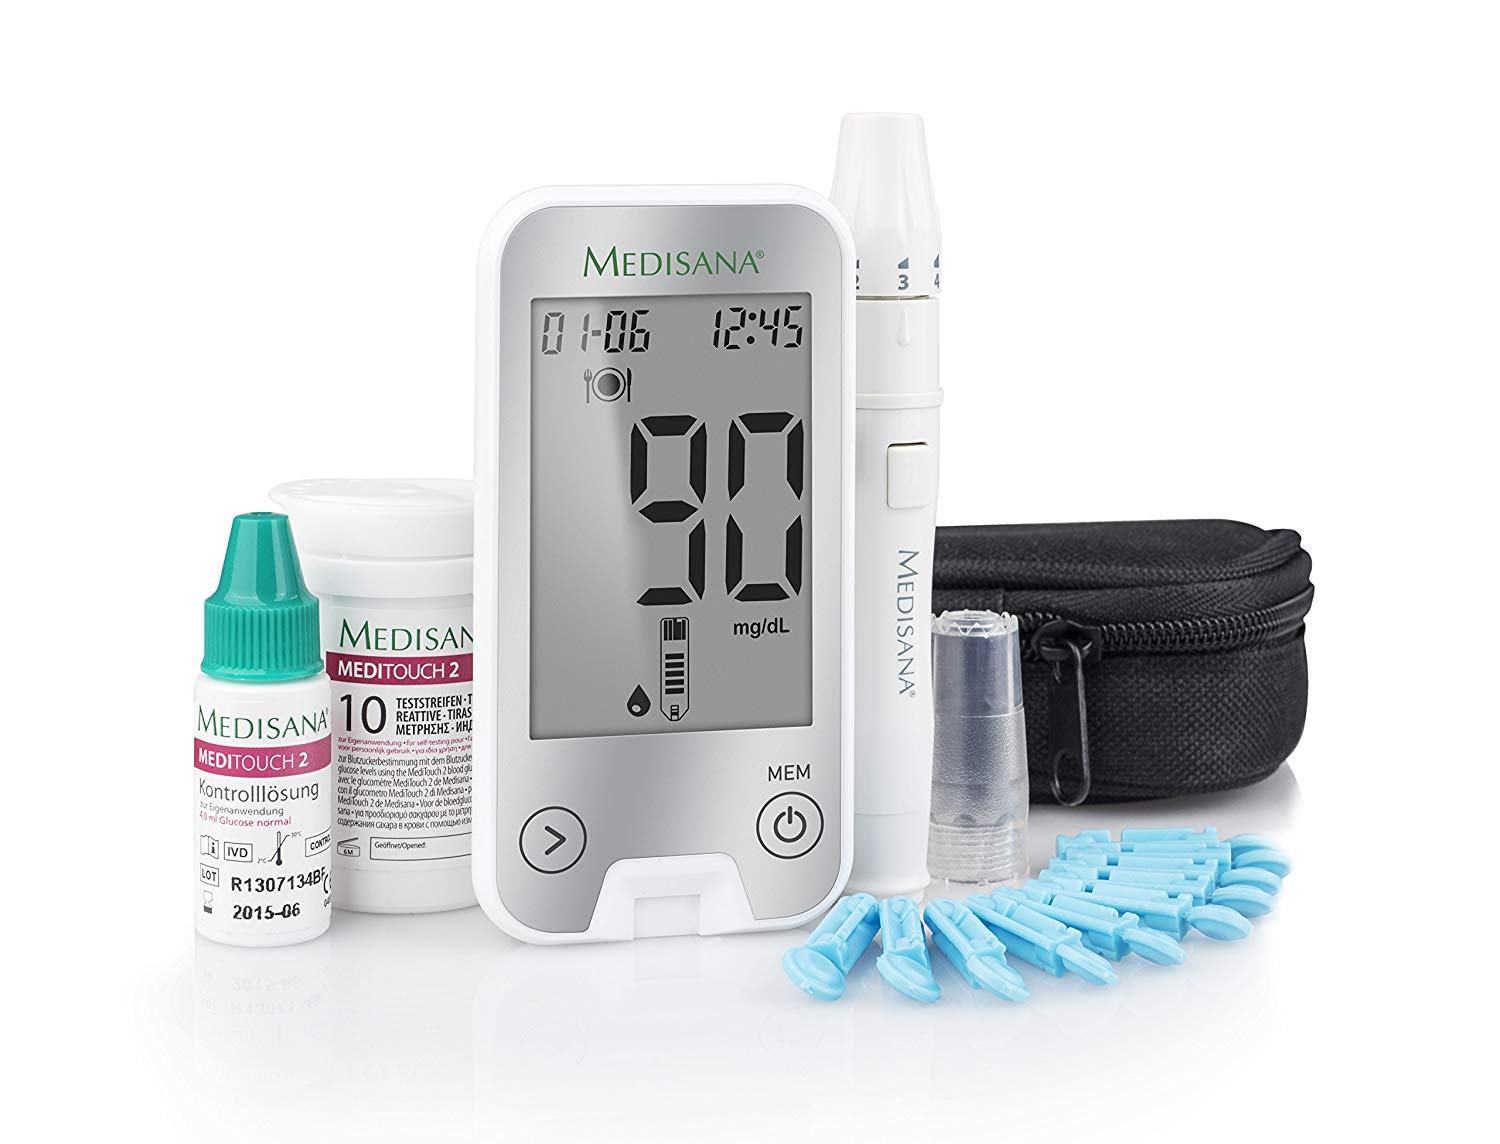 Đánh giá máy đo đường huyết Meditouch 2 Đức